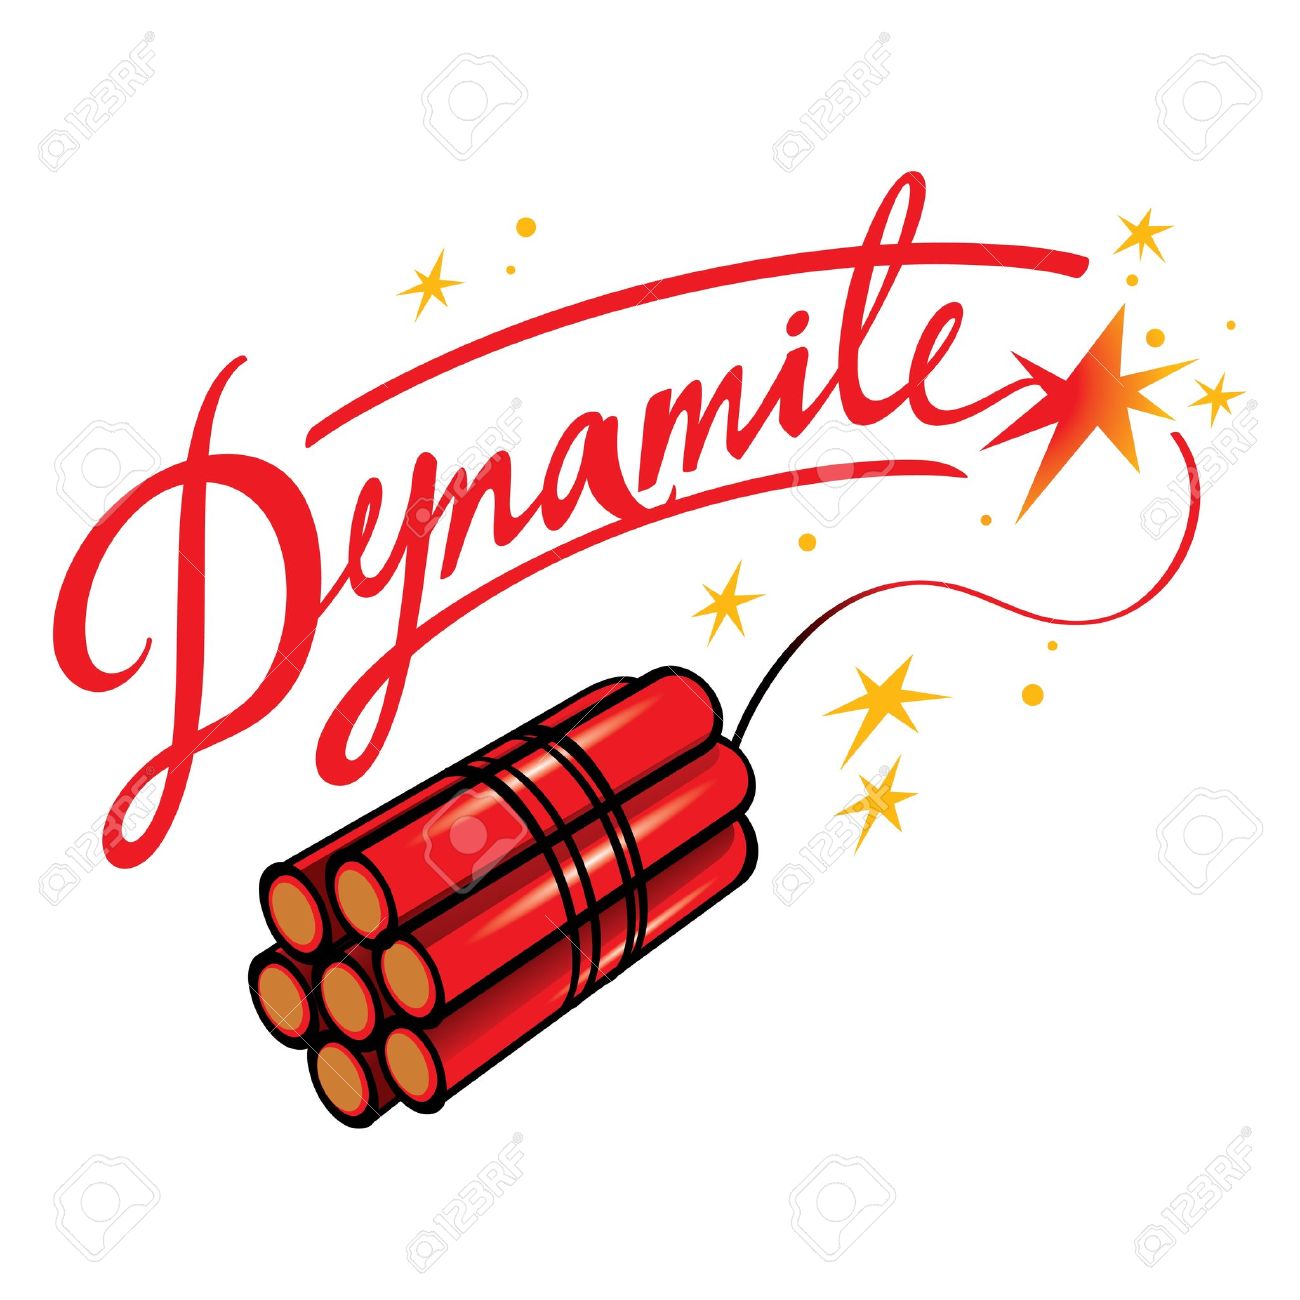 ... Dynamite - 3d render of d